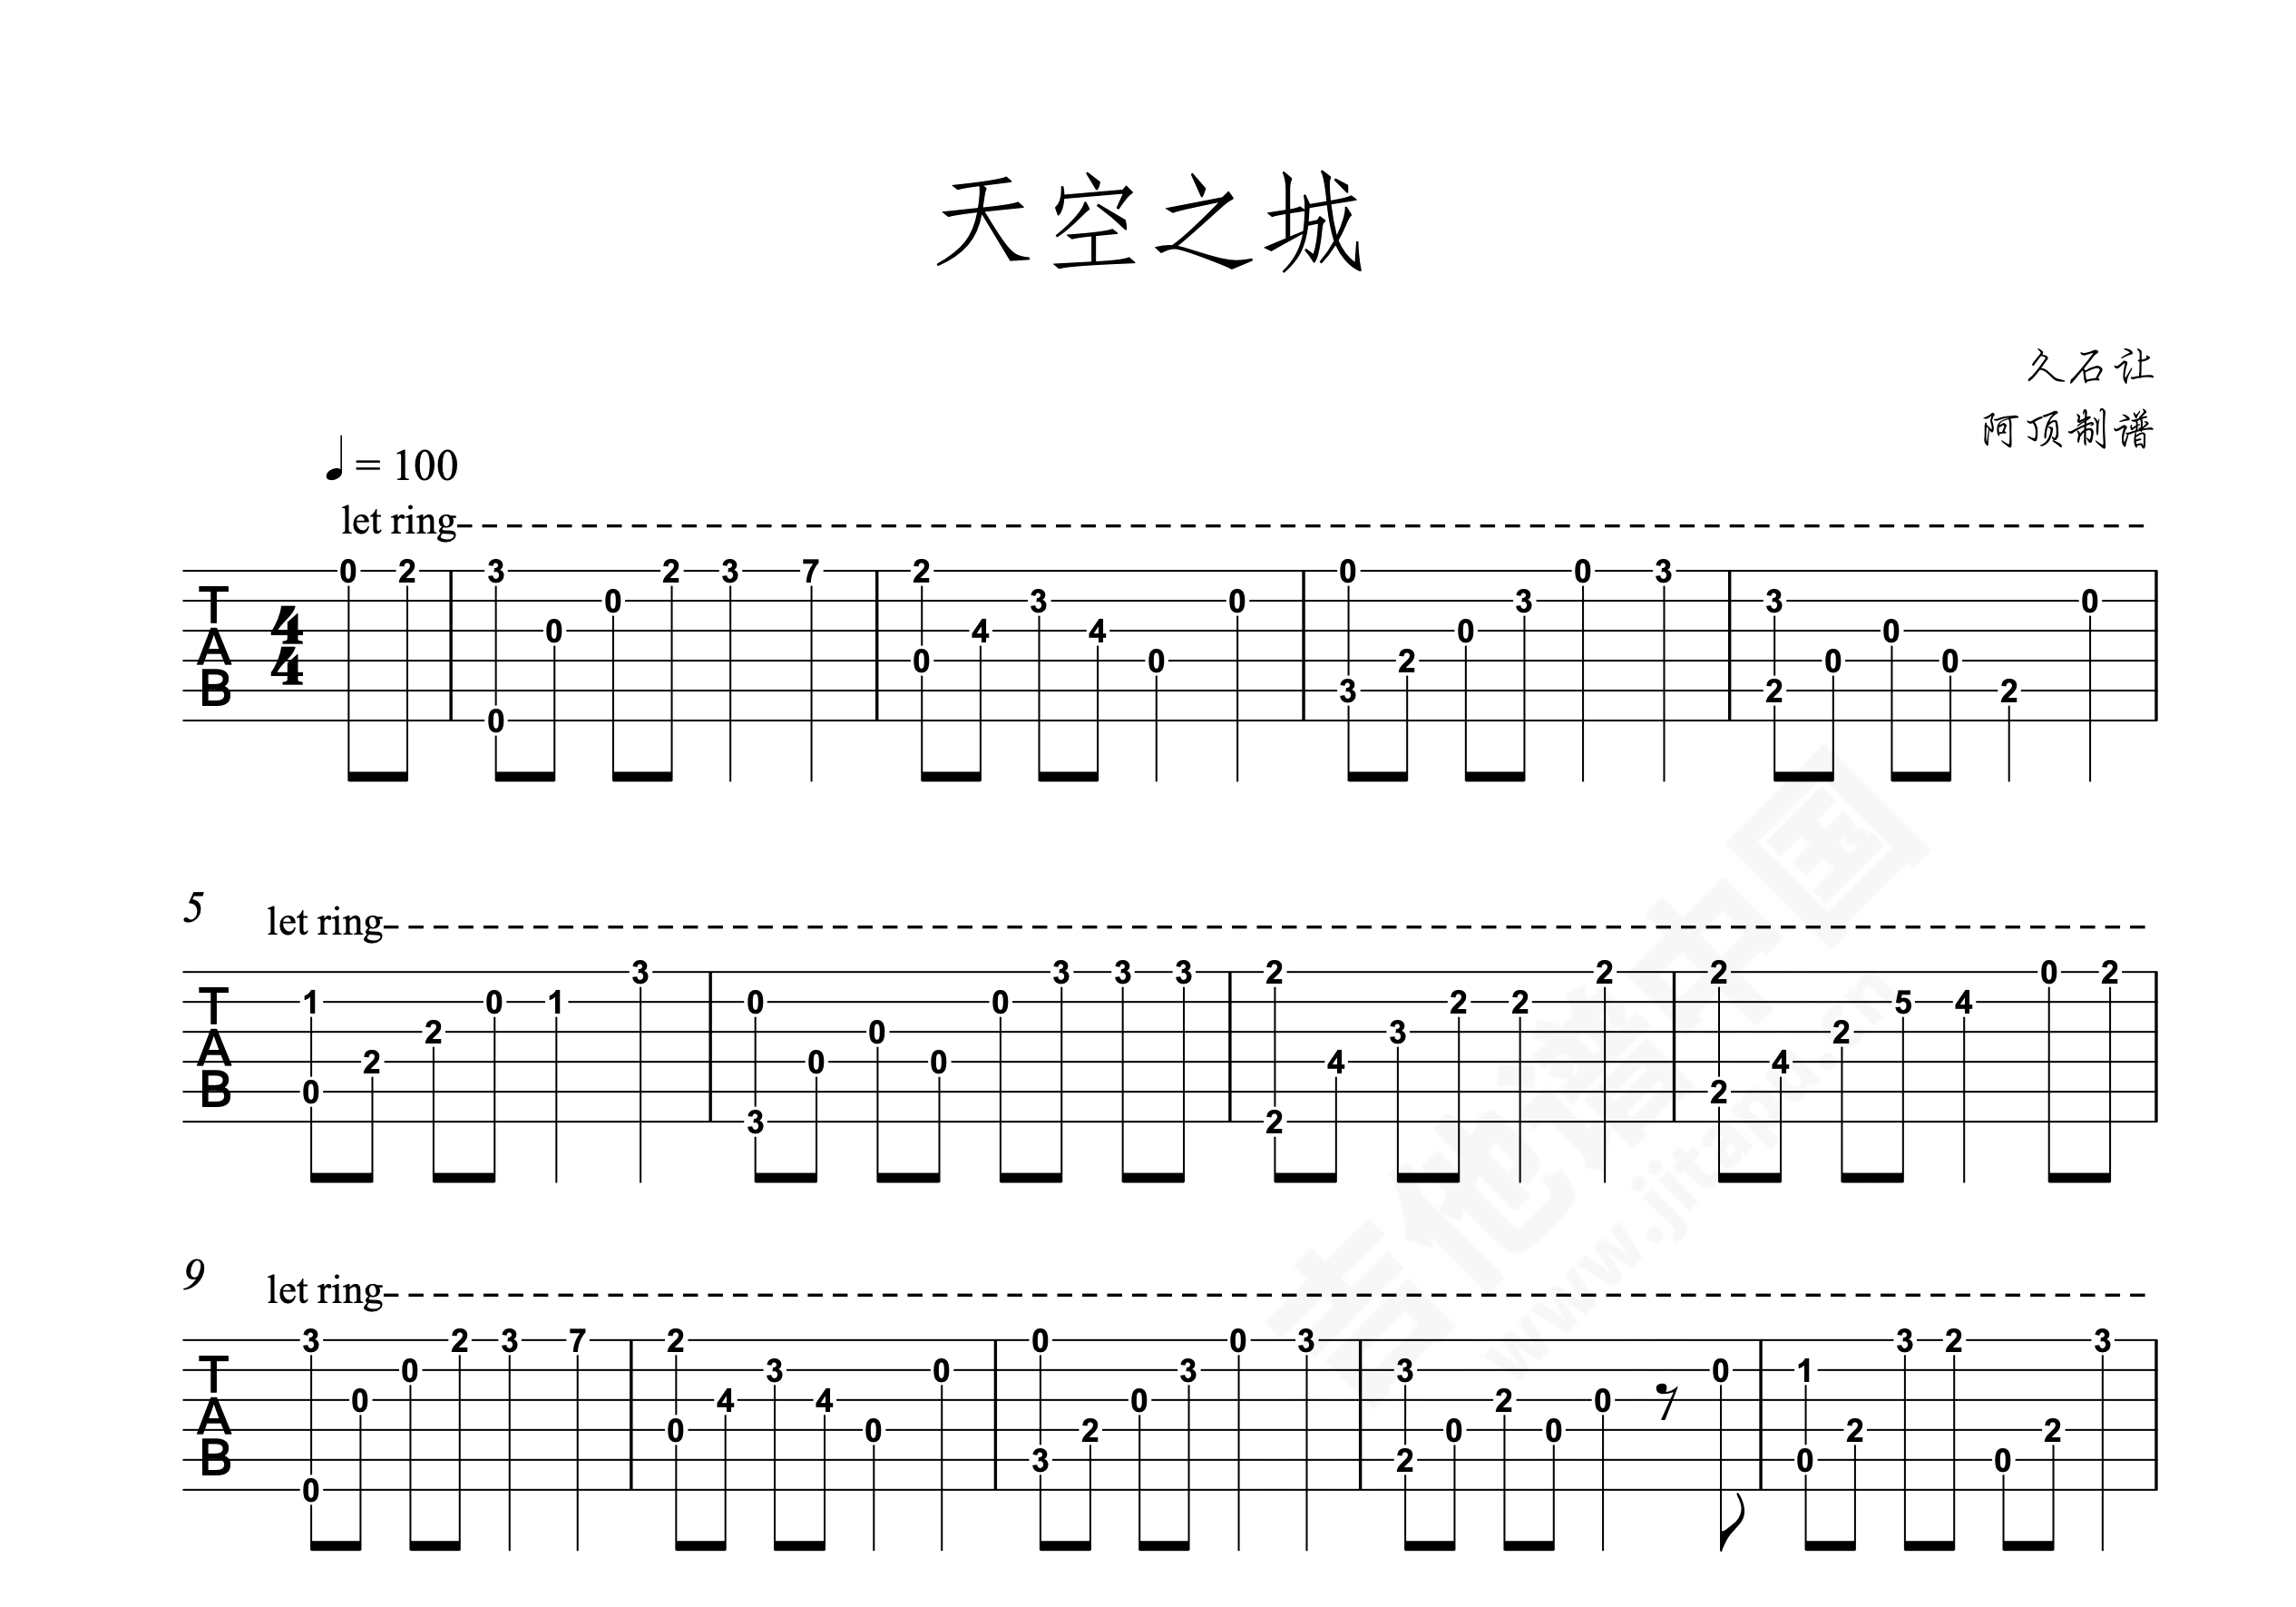 天空之城吉他谱 - 久石让 - 吉他独奏谱 - 超简单版 - 琴谱网